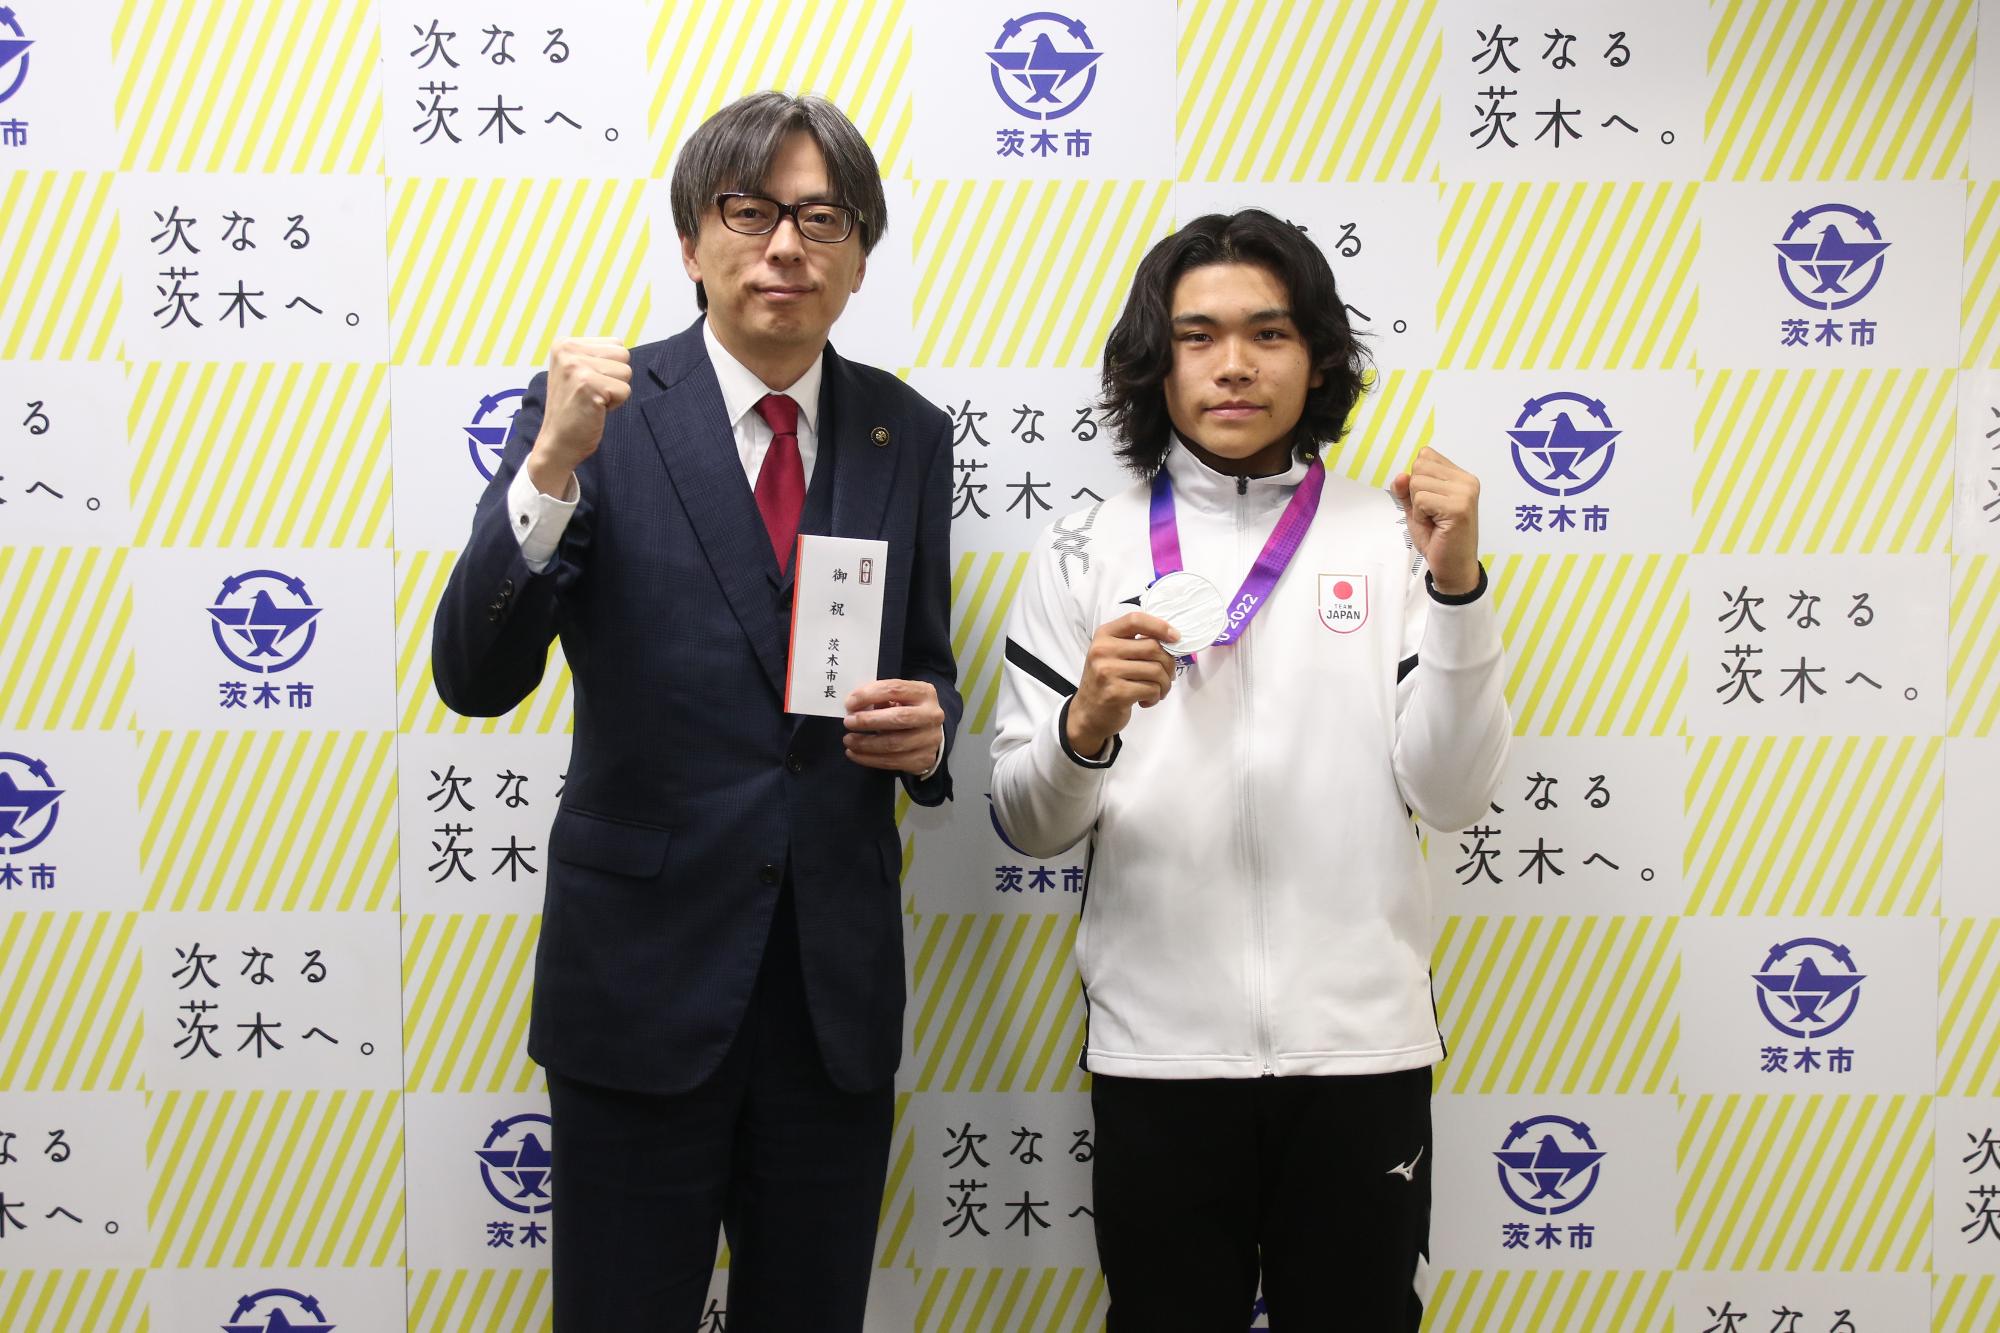 ガッツポーズをする川原大和さんと市長の写真